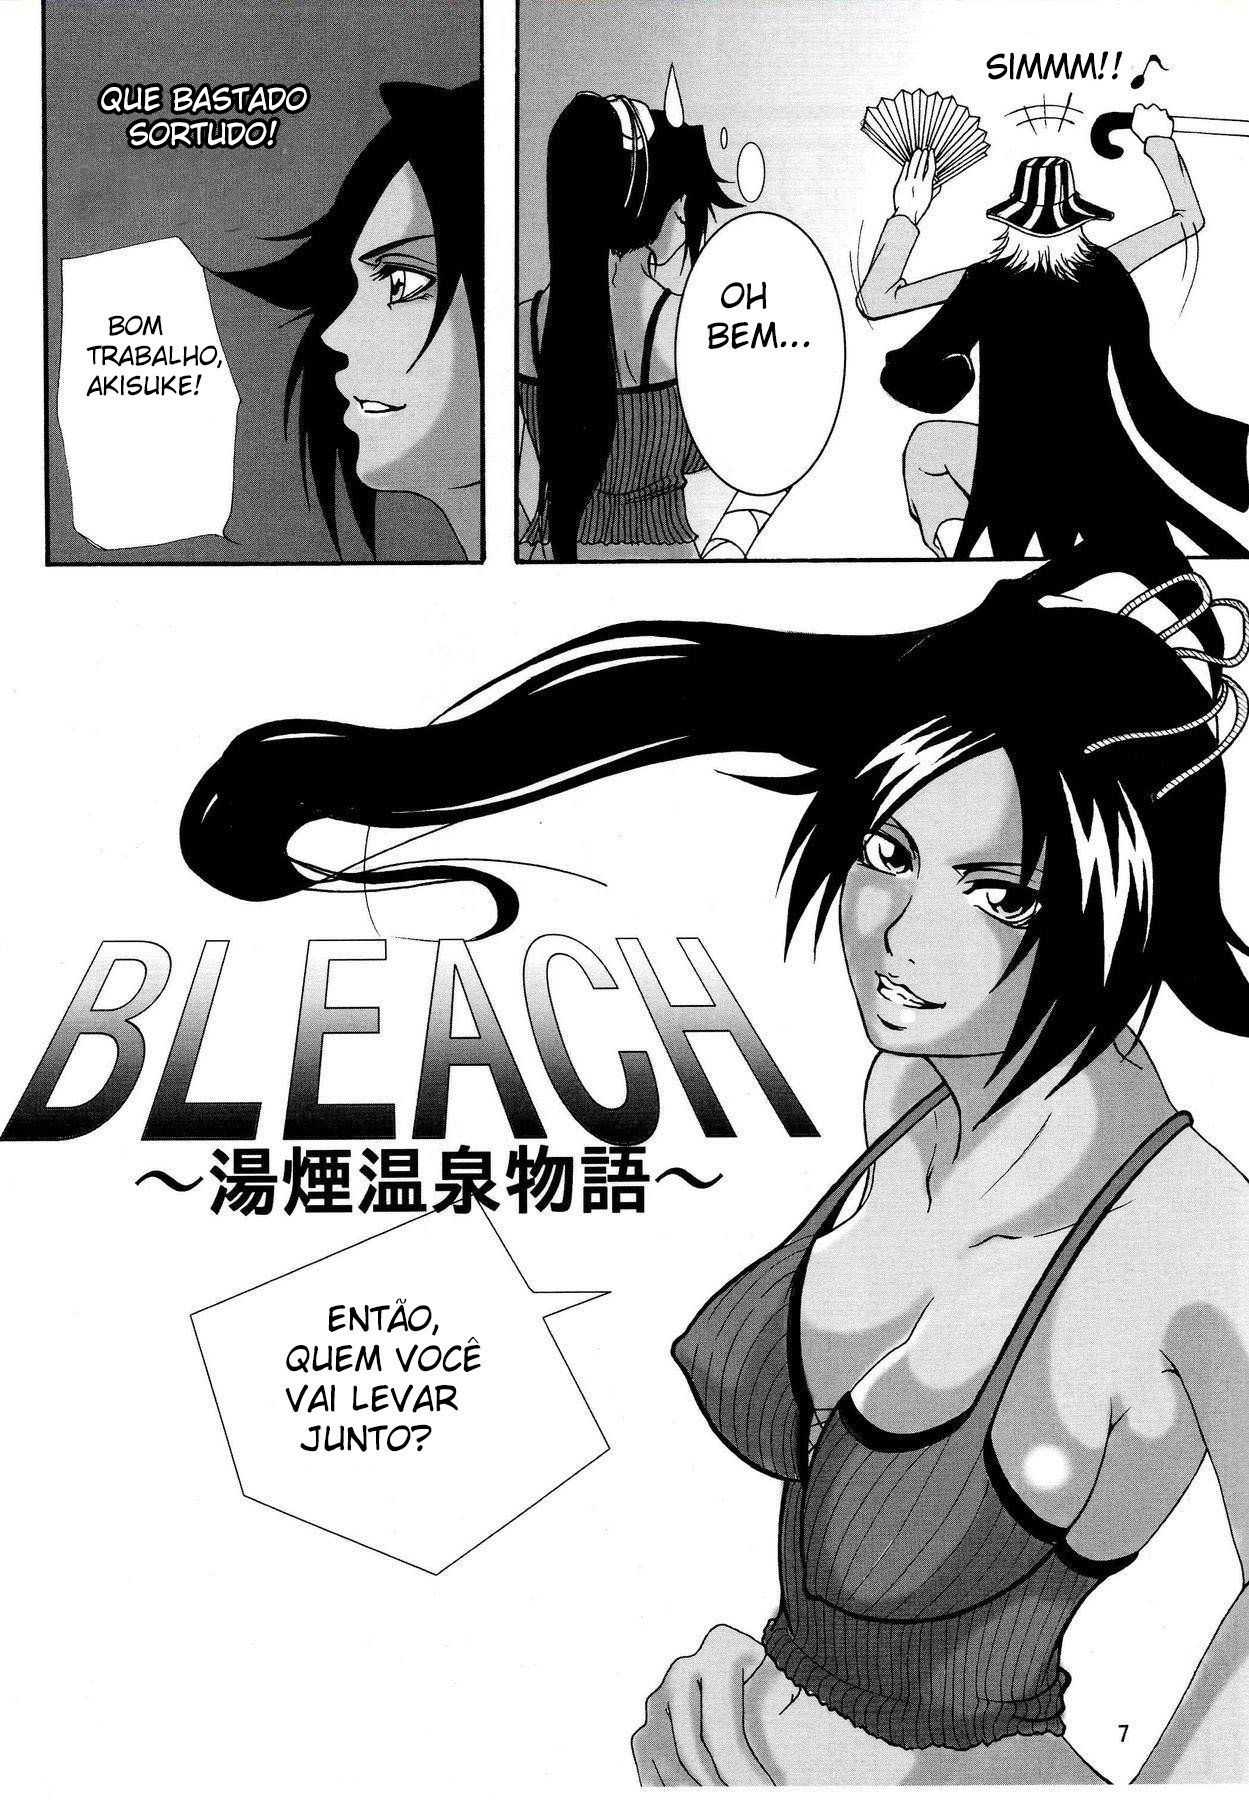 O sonho de Jinta – Bleach Hentai (4)